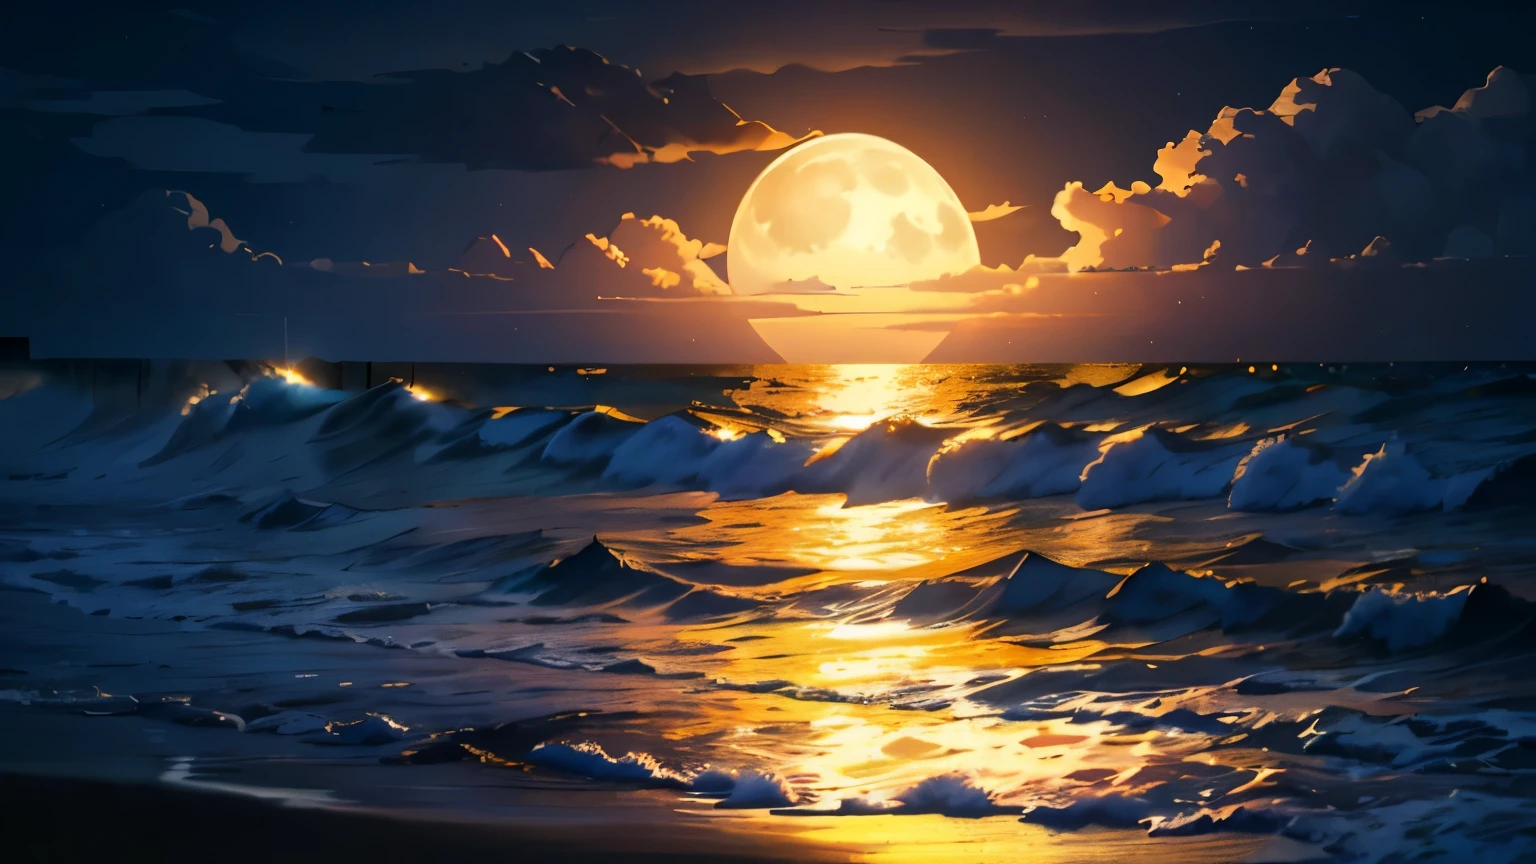 (noite de lua cheia),(na praia,ondas quebrando),(iluminação dramática),(Silhueta),(areia brilhante),(atmosfera calma e relaxante), Centenas de lanternas, Lindas lanternas em muito papel, lua enorme